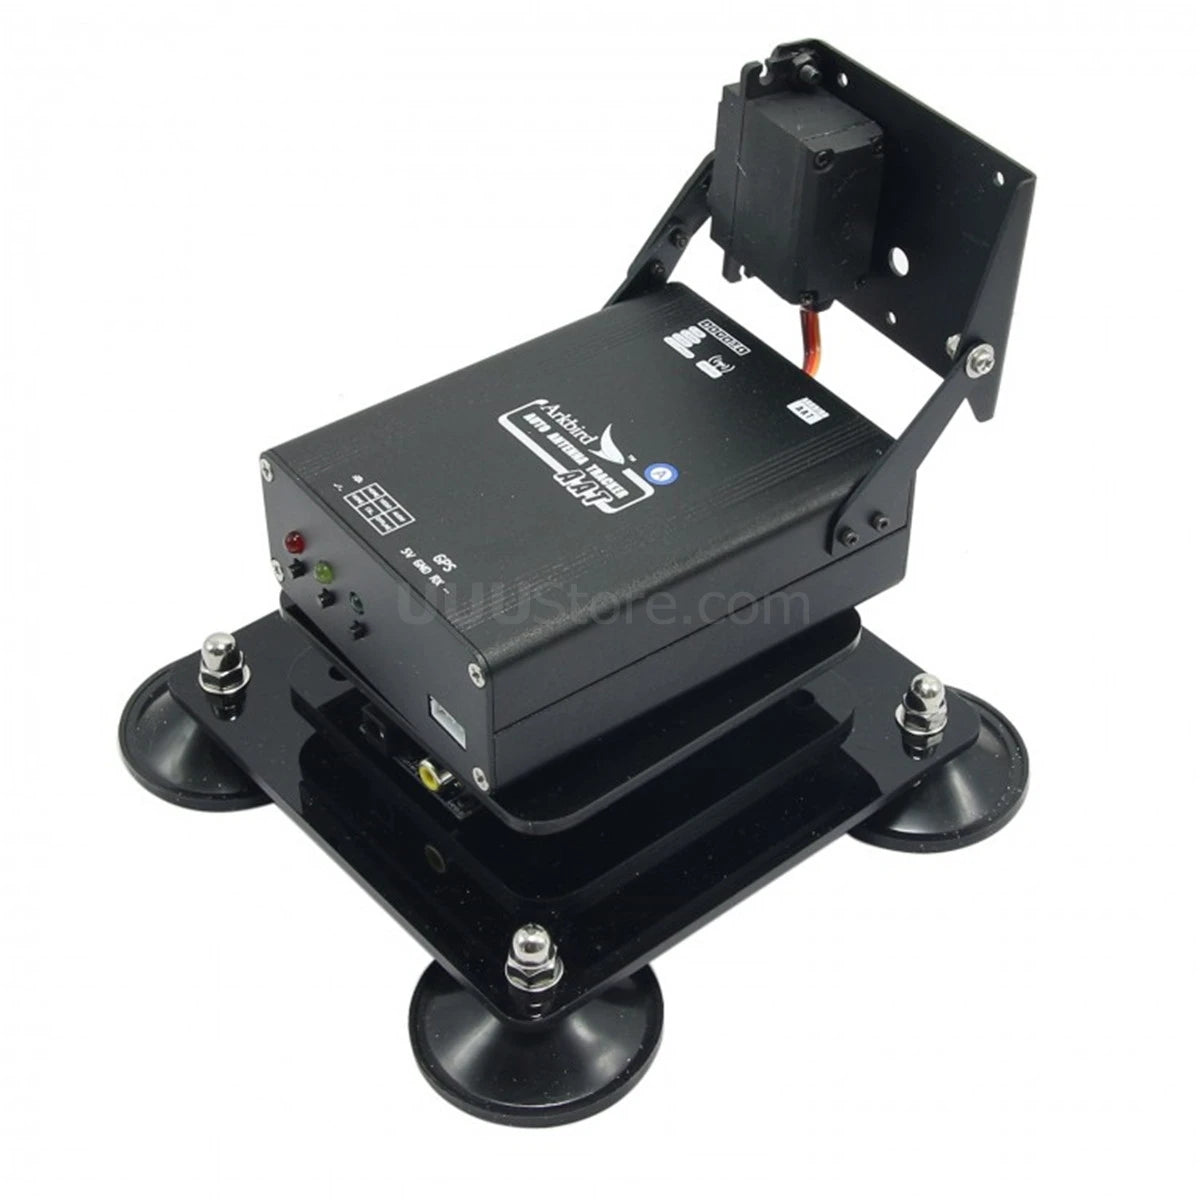 Arkbird AAT Auto Antenna Tracker Gimbal w/Ground and Airborne